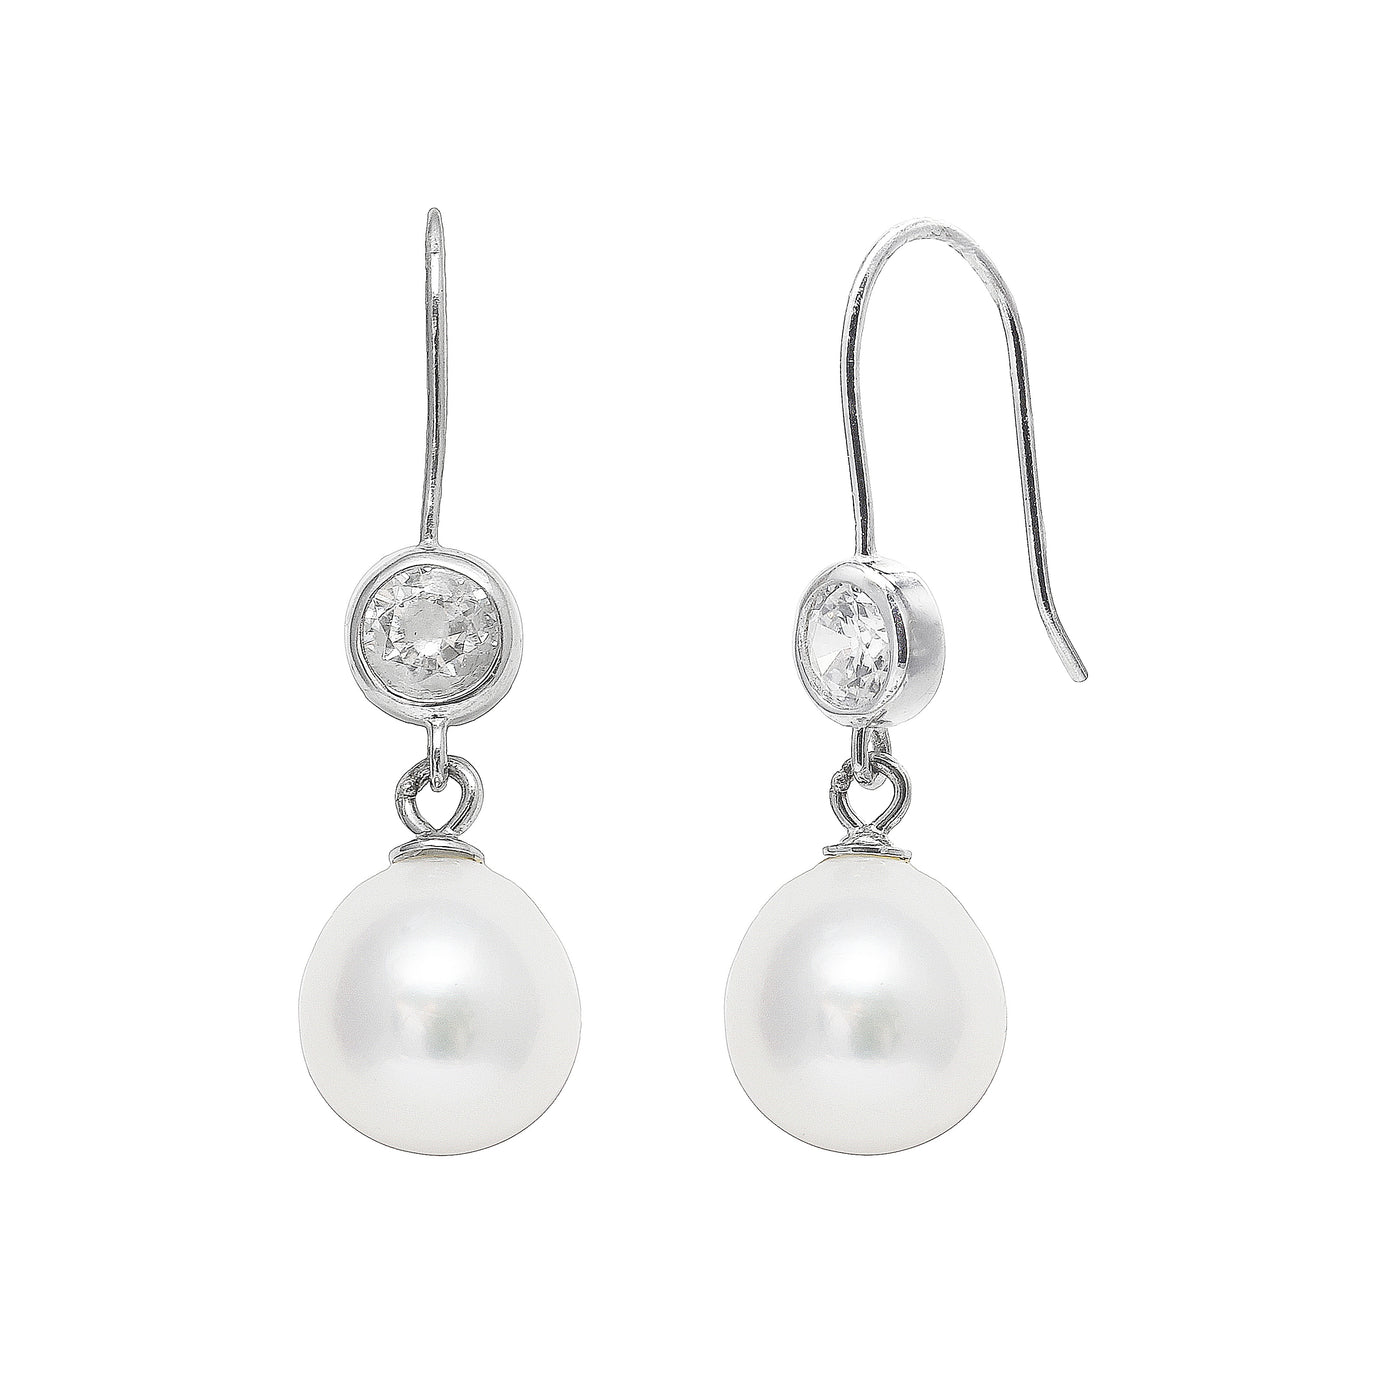 White Teardrop Pearl Drop Earrings with CZ